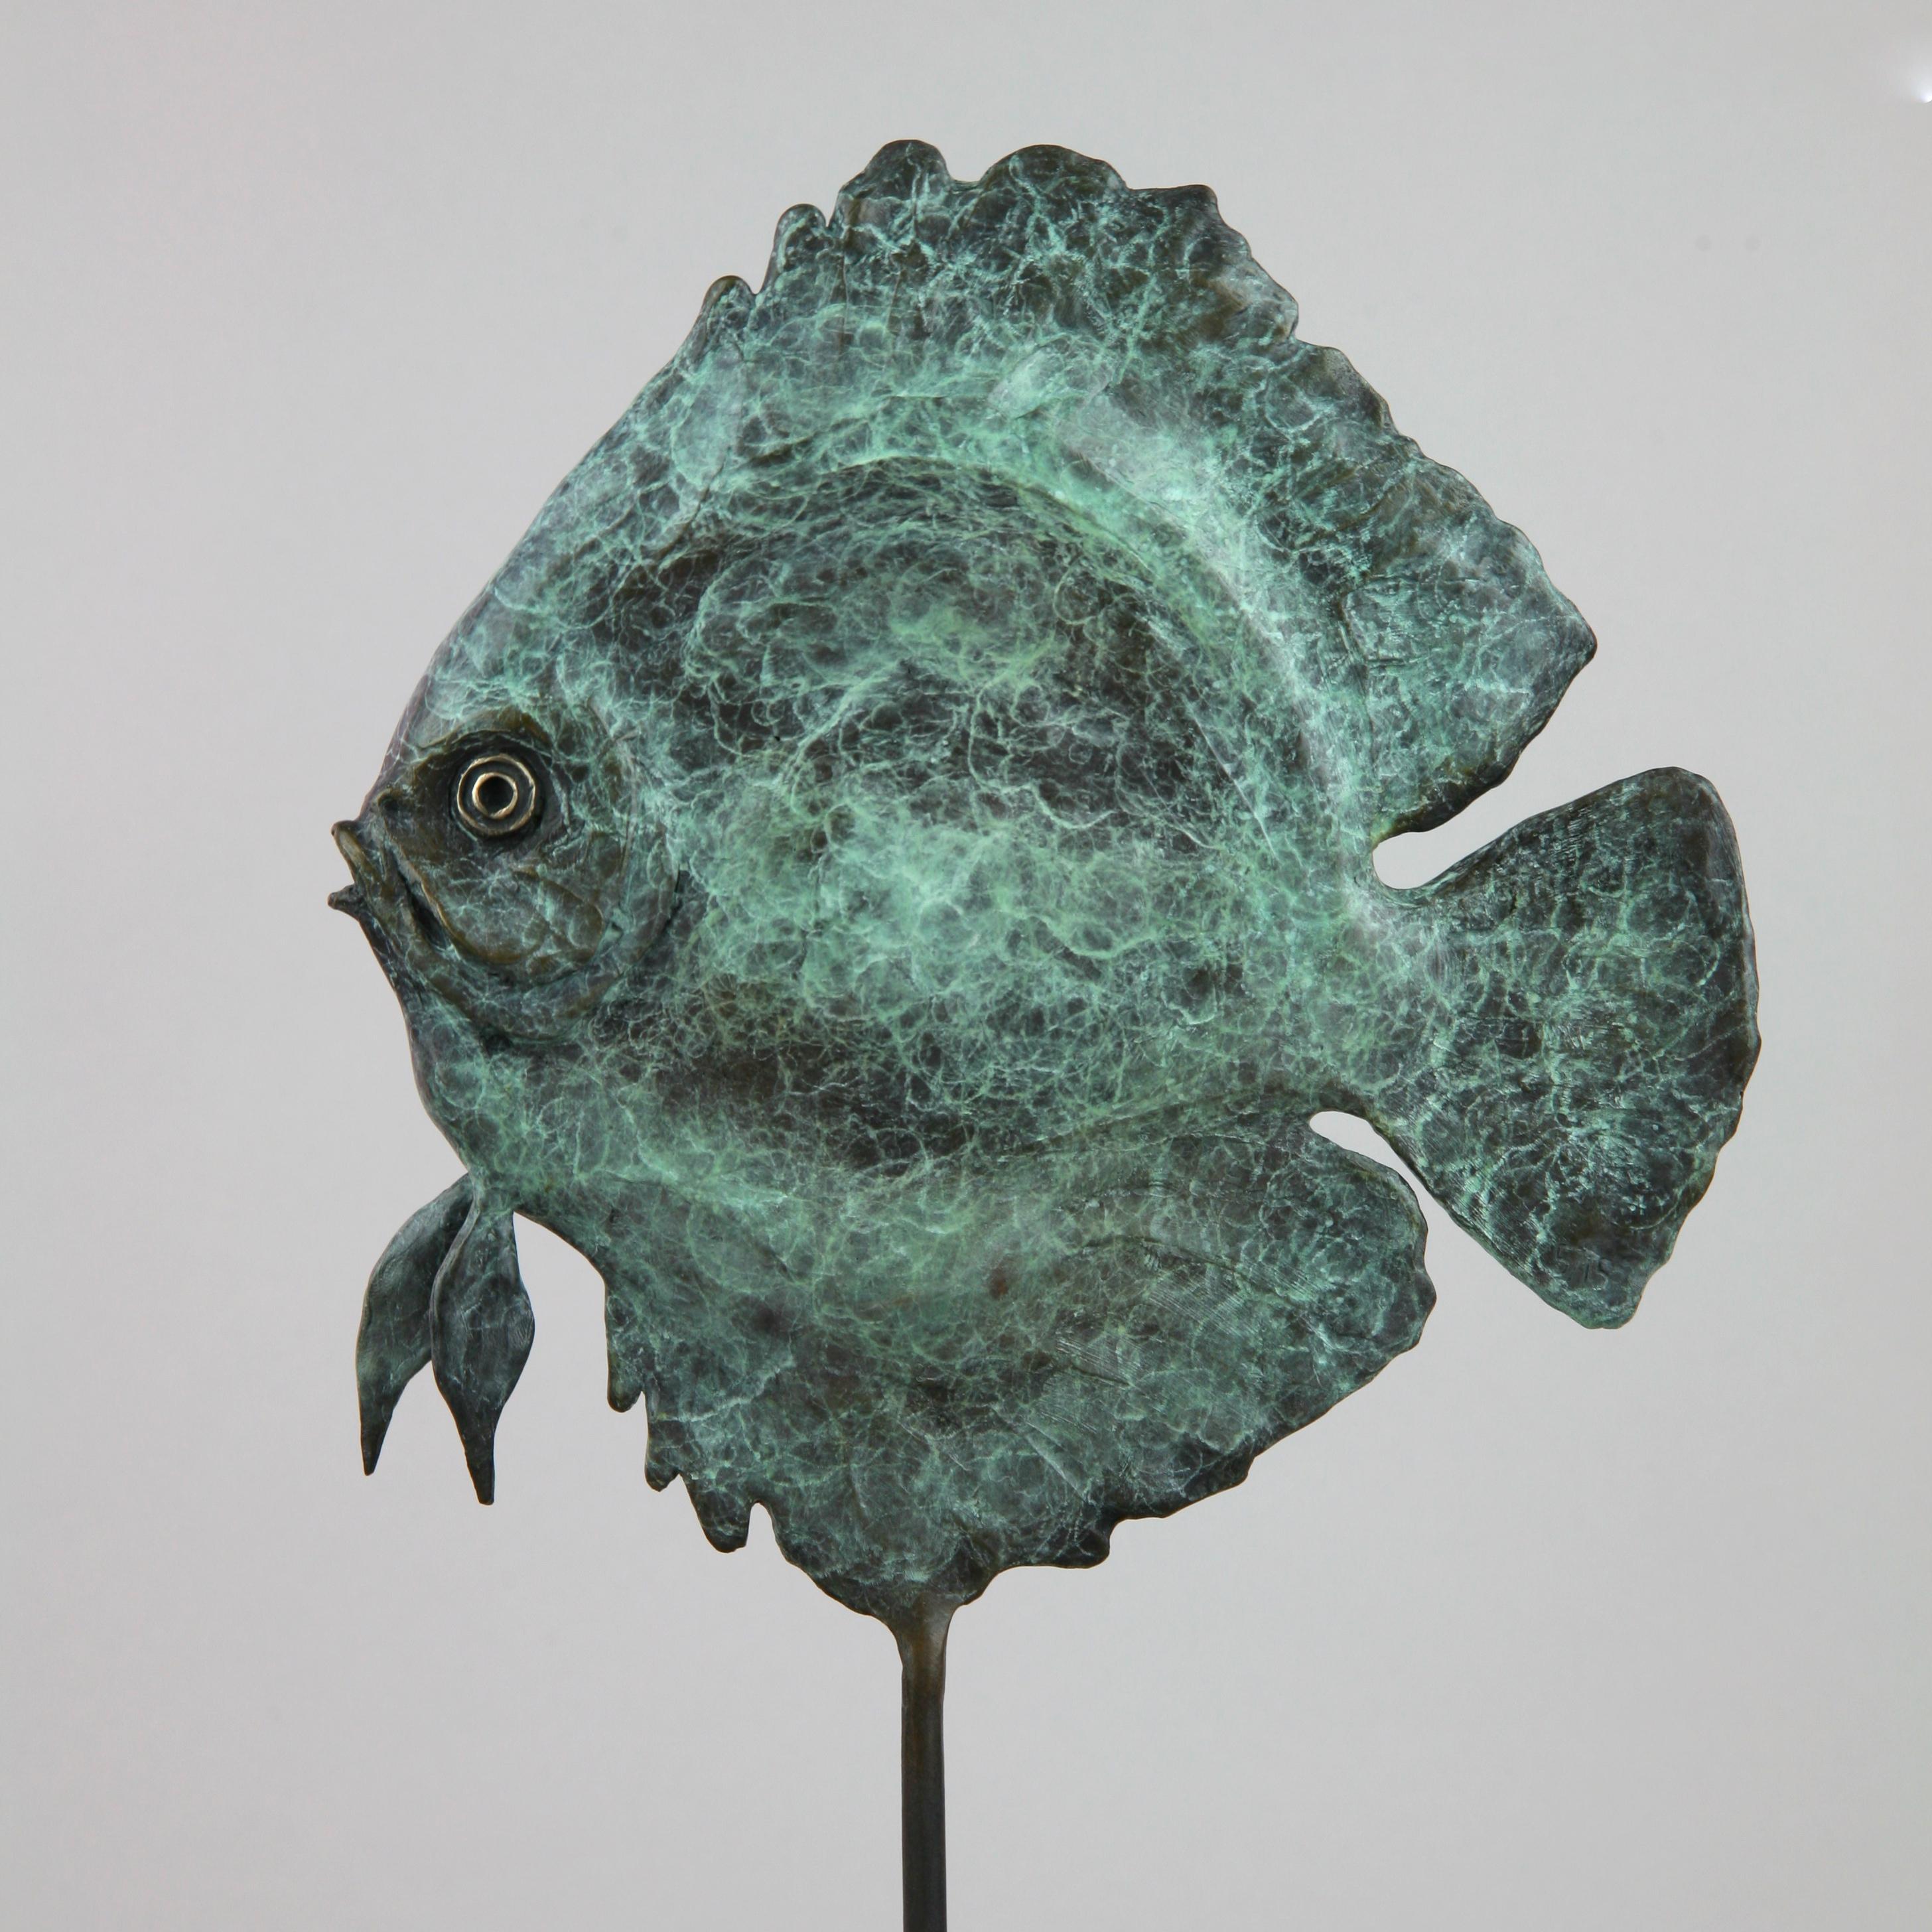 Cette sculpture marine contemporaine d'Andrzej Szymczyk représente un poisson discus et est coulée de manière experte en bronze. La pièce en pose libre est recouverte d'un revêtement vert serein, une teinte qui rappelle son environnement océanique